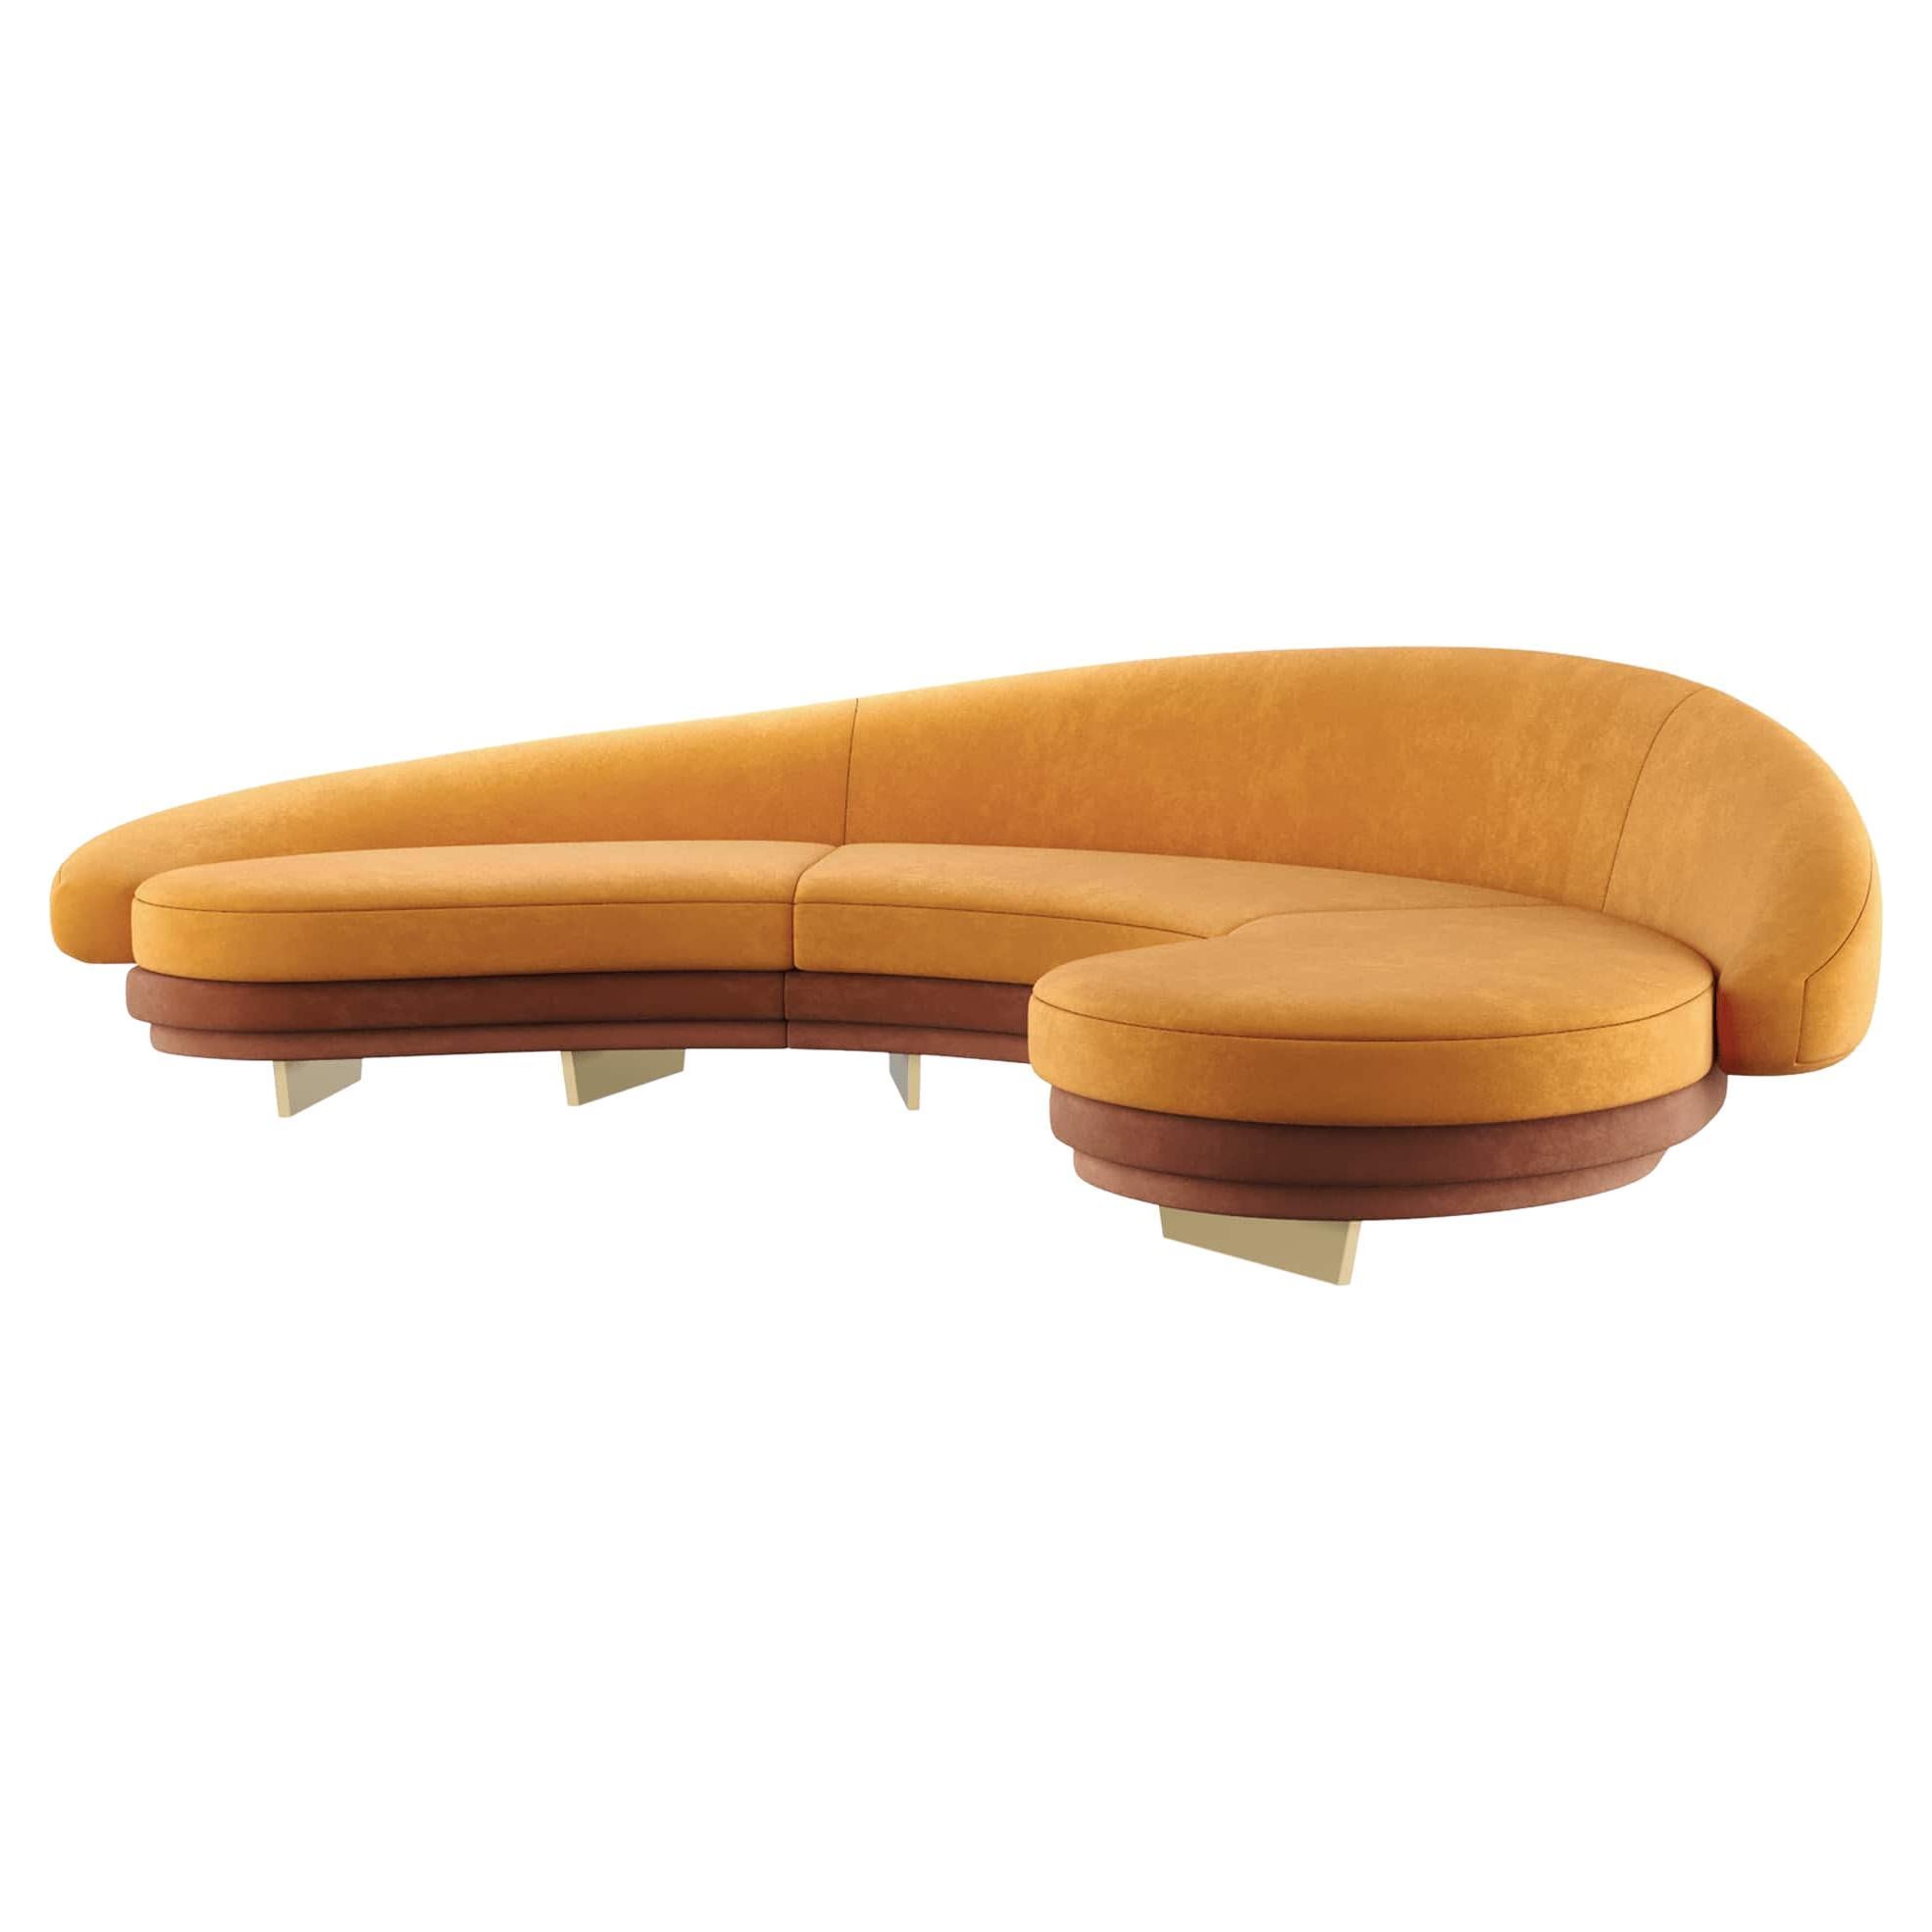 Canapé moderne incurvé en velours orange avec détails en bois et or